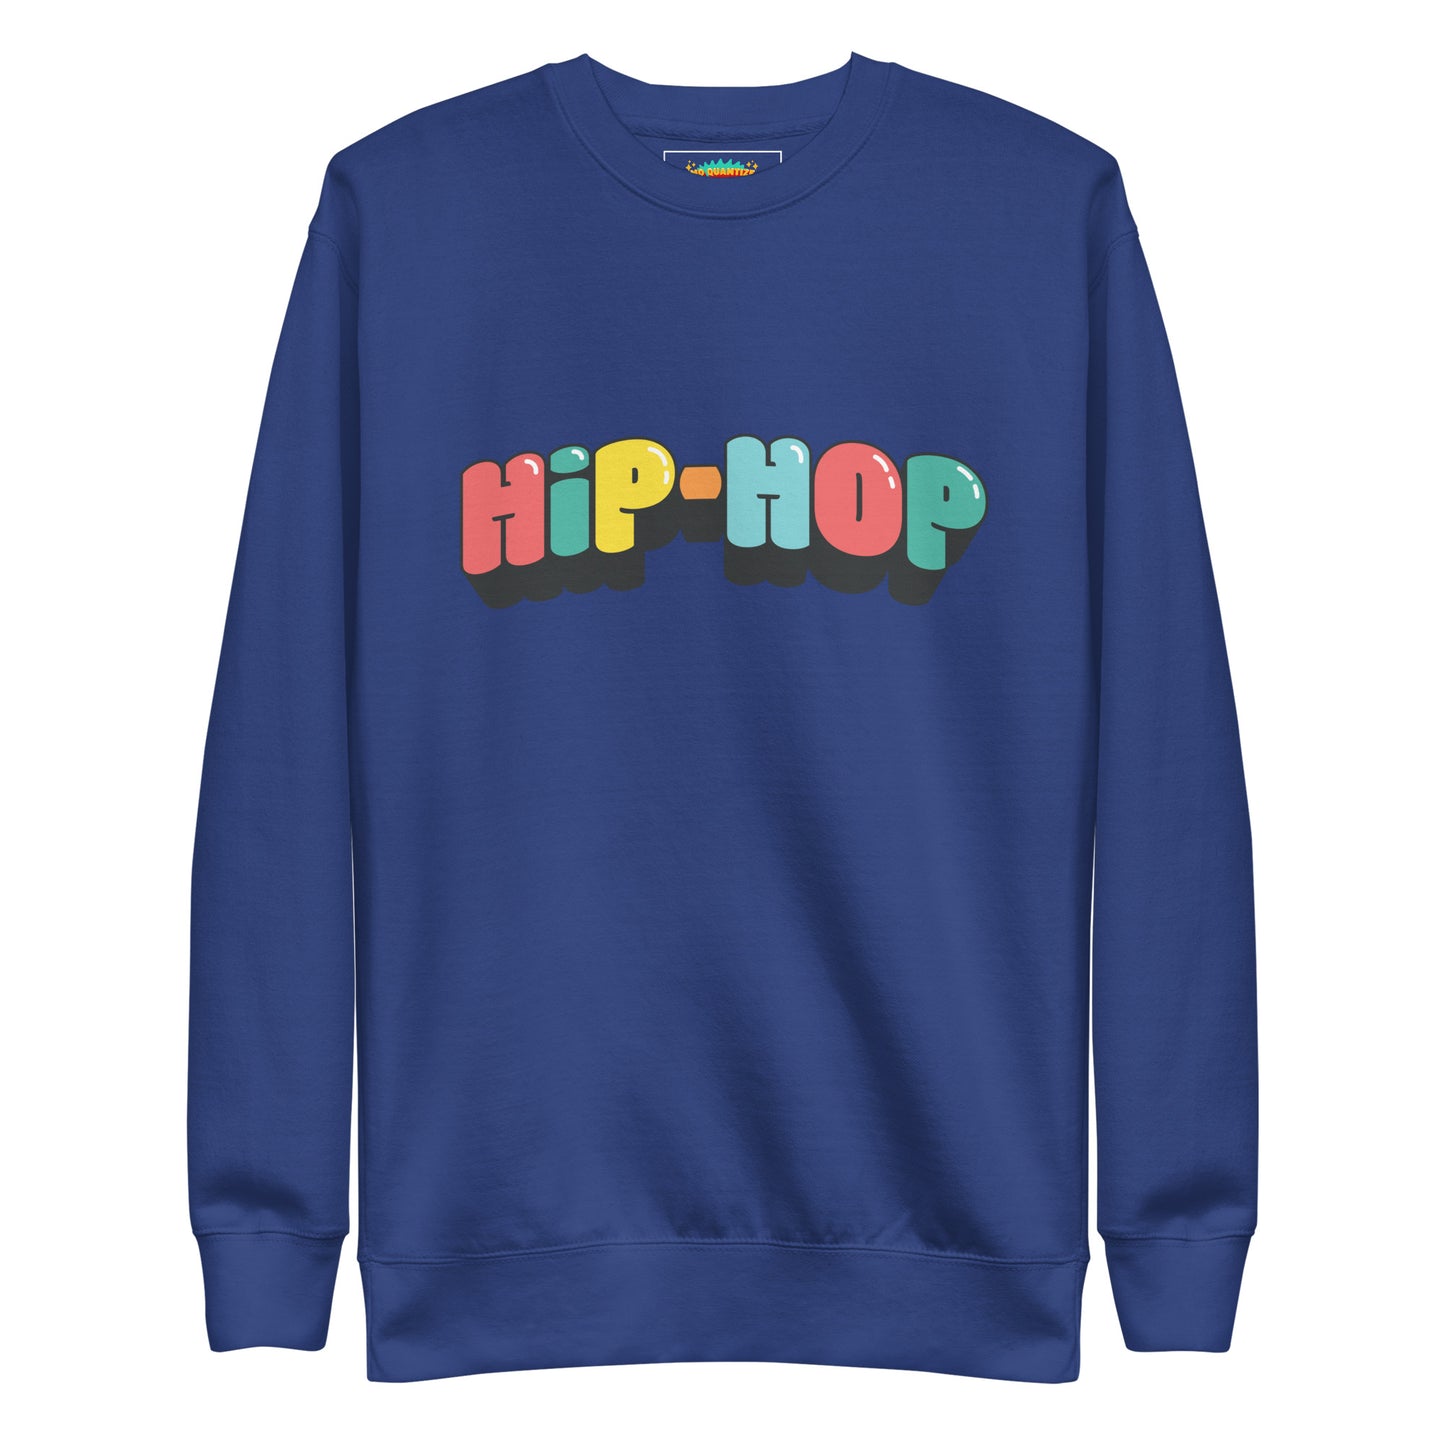 "HIP-HOP" Sweatshirt